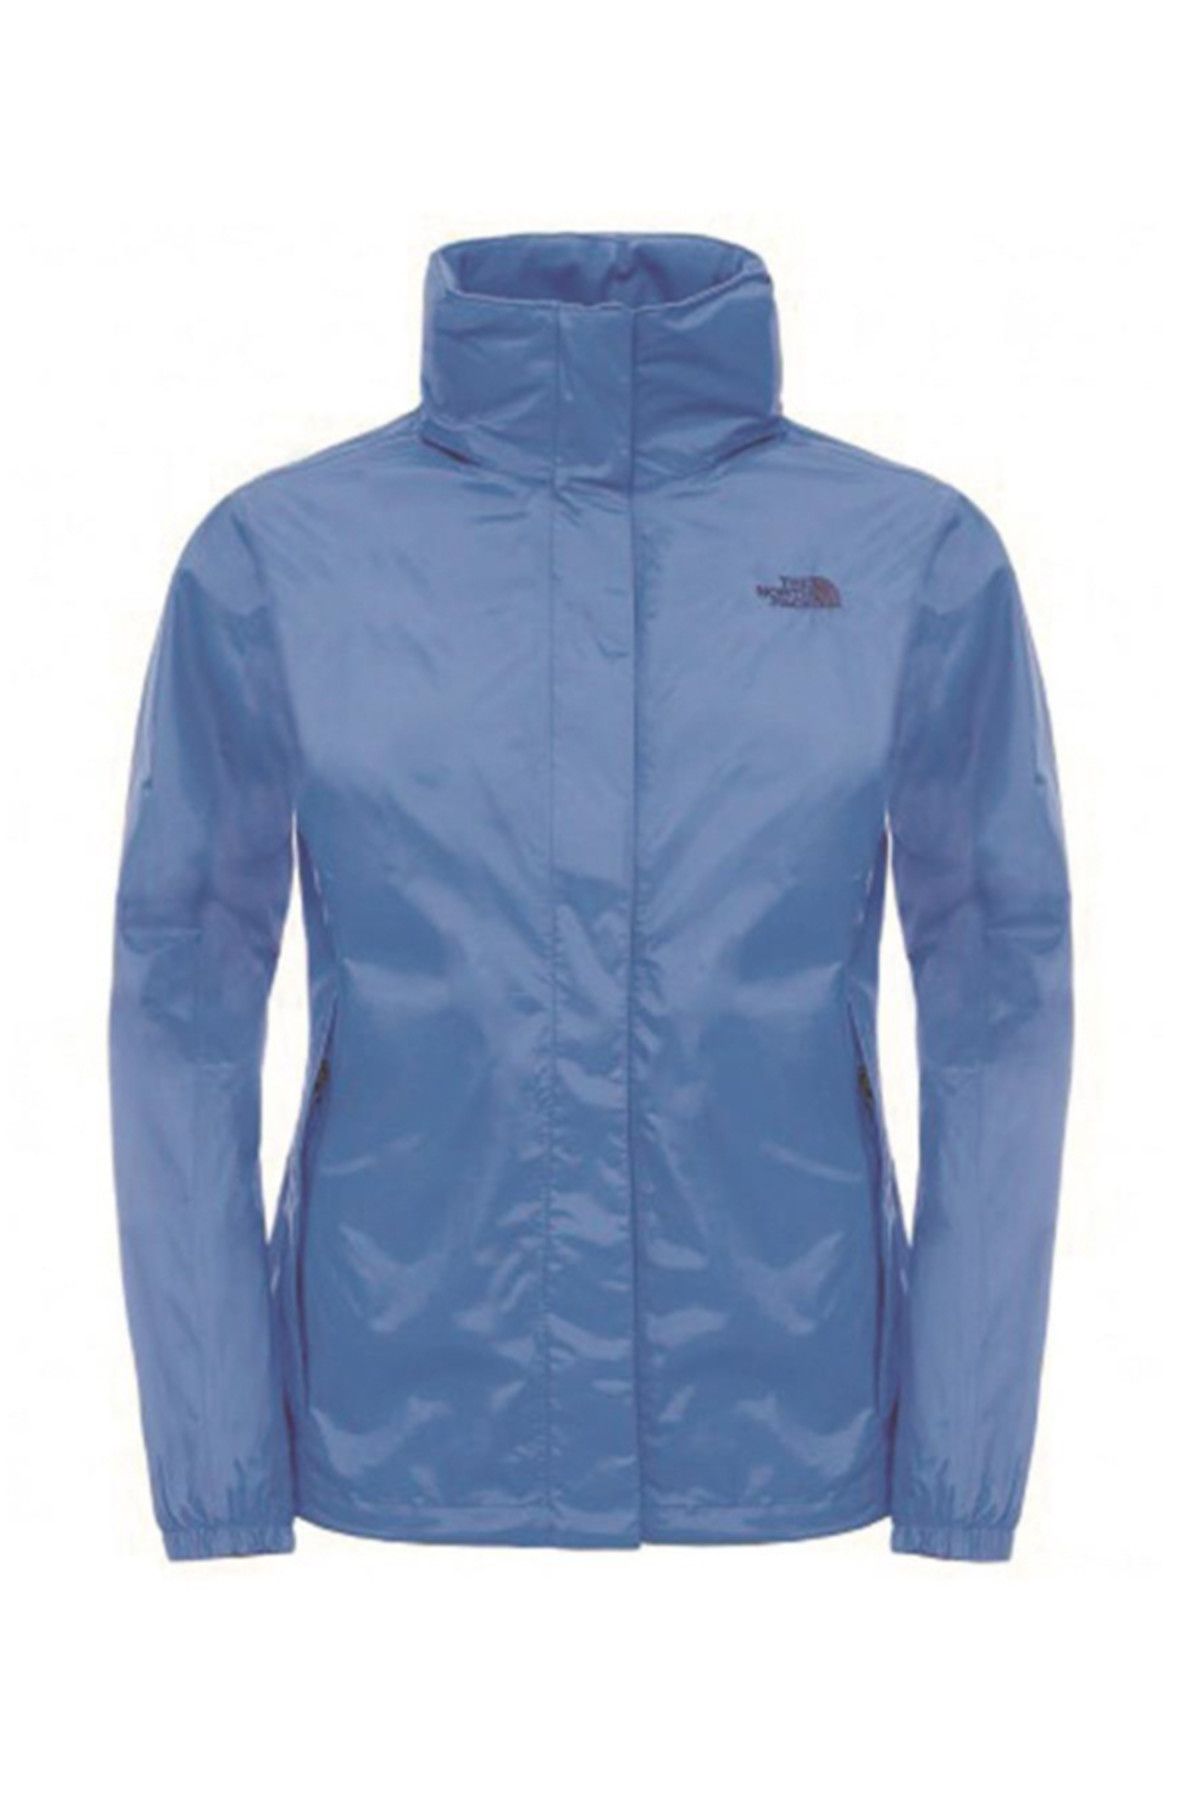 The North Face - W Resolve Jacket - Kadın Yağmurluk